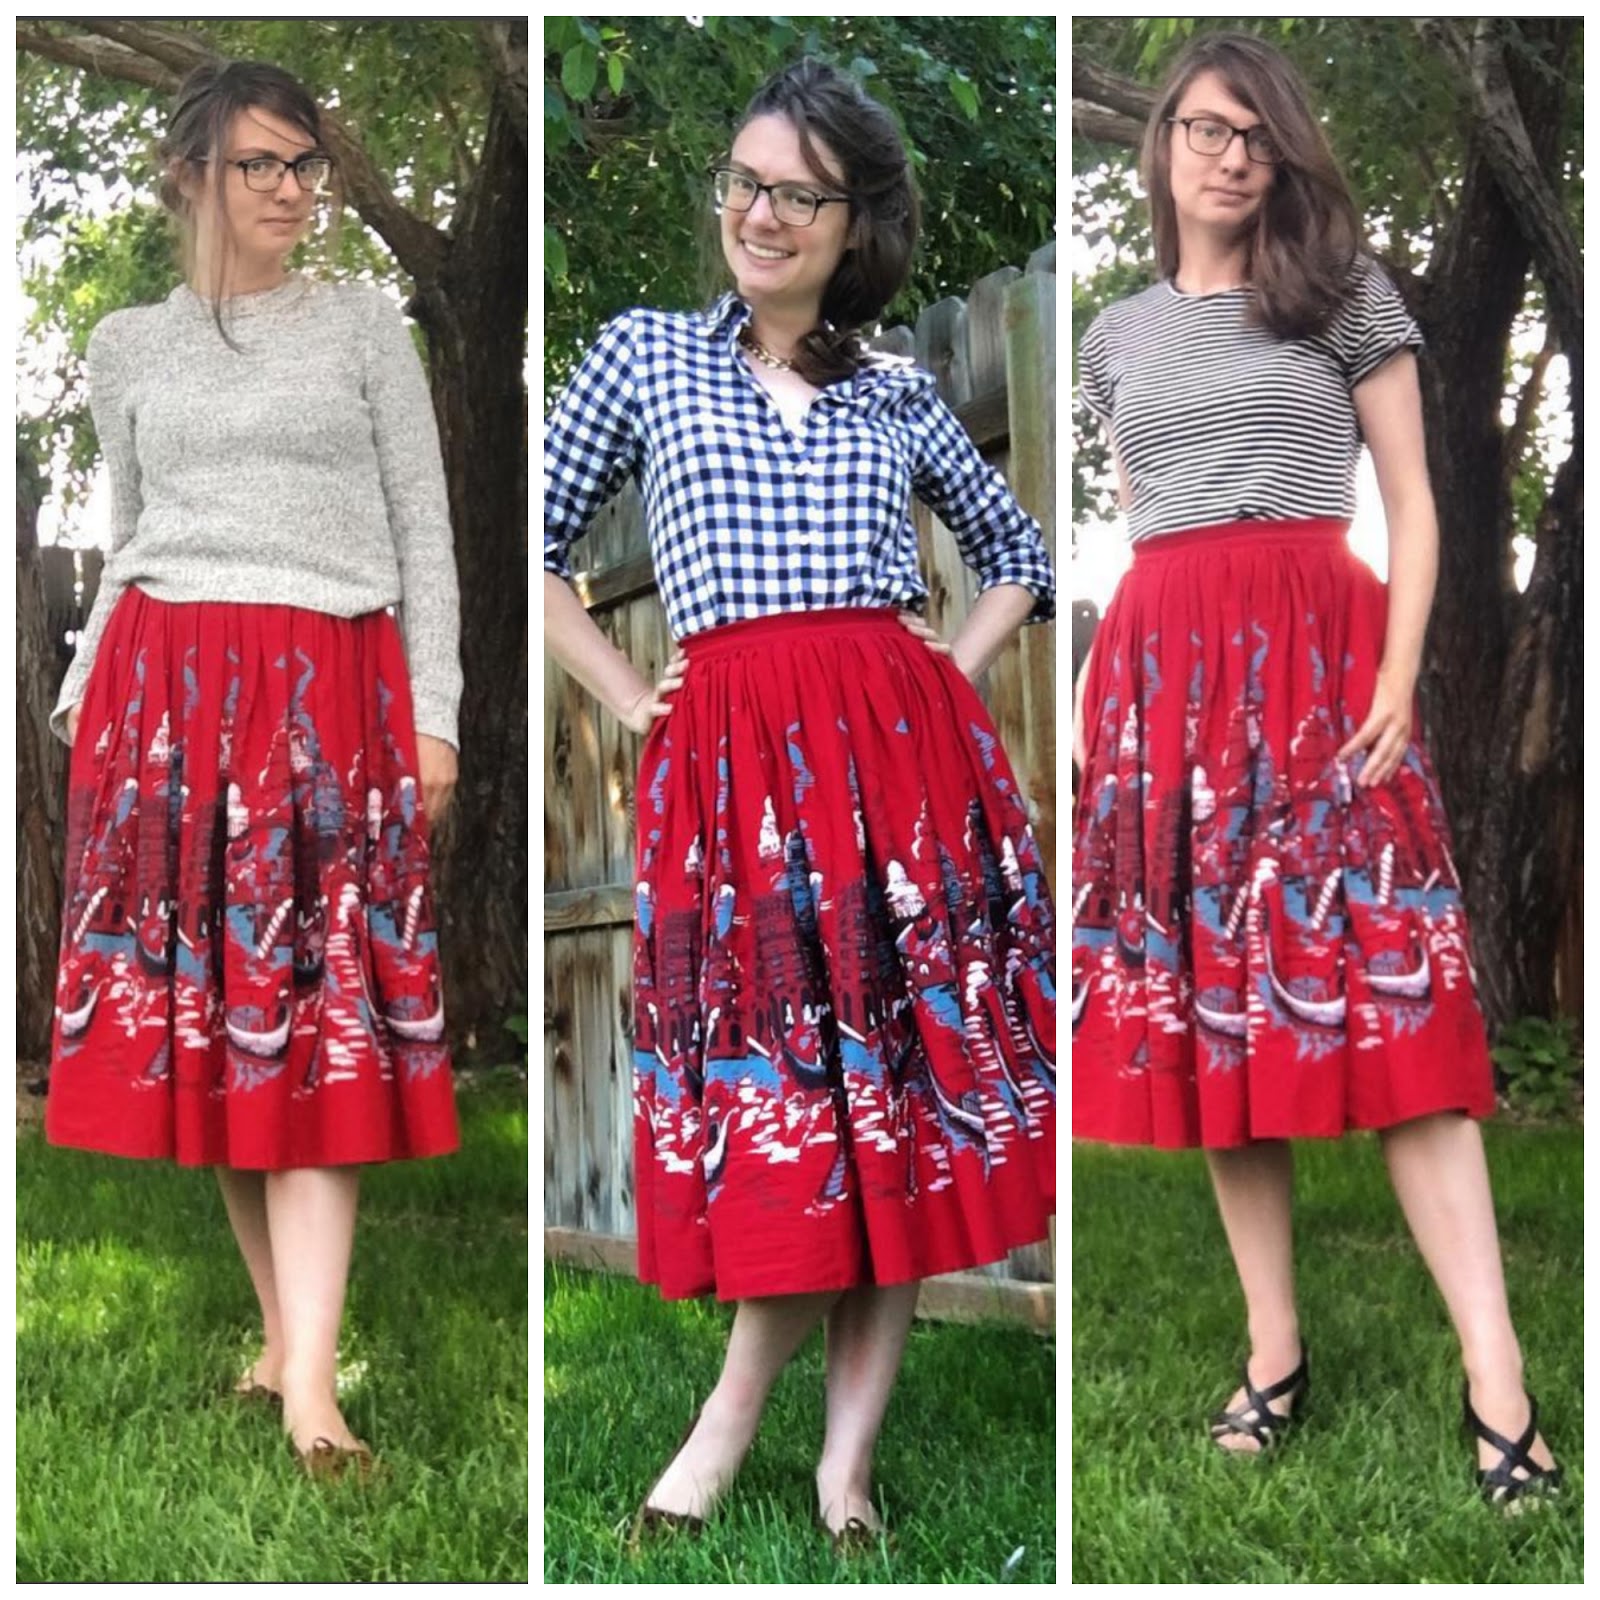 pin up girl clothing, red skirt, venice, novelty skirt, styling skirts, 